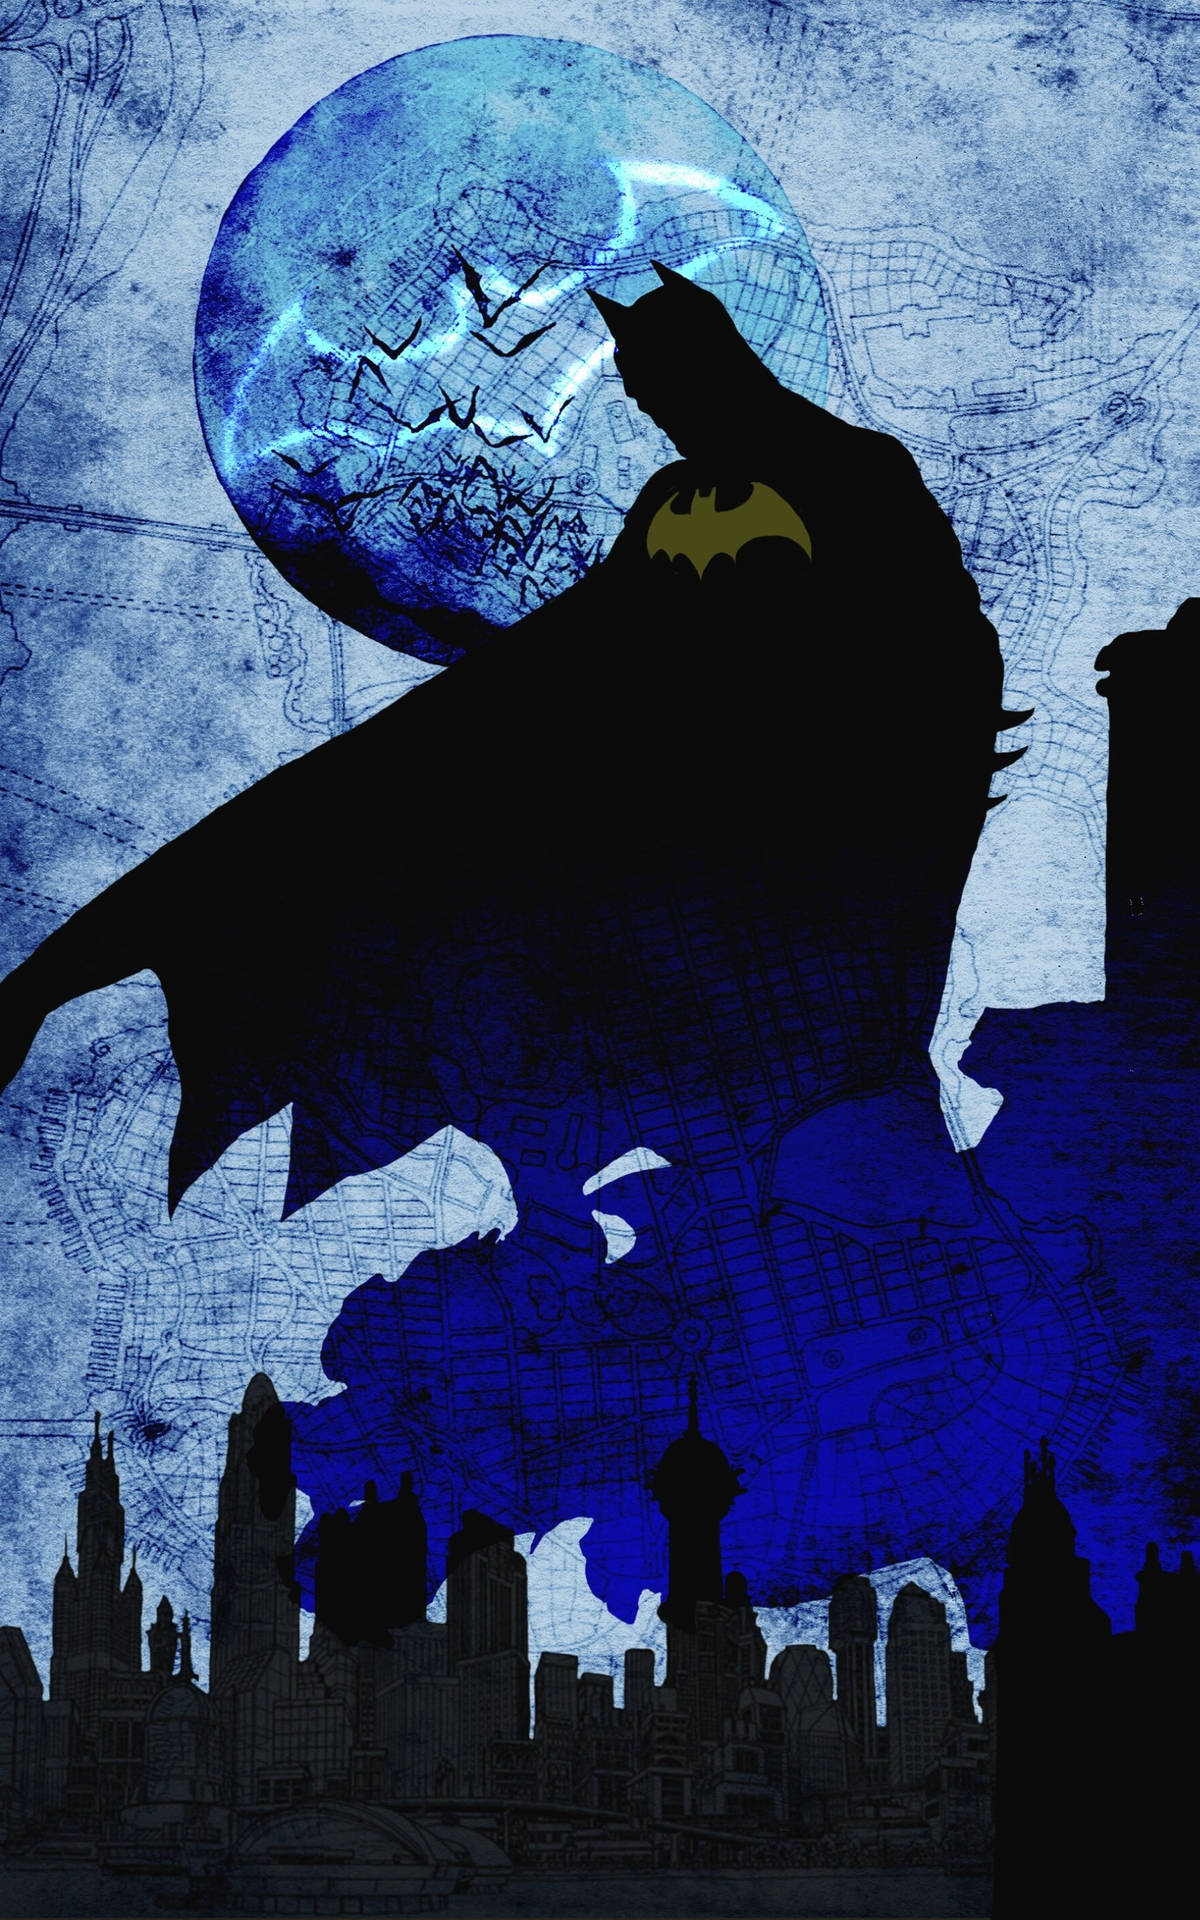 Free Batman Phone Wallpaper Downloads, [200+] Batman Phone Wallpapers for  FREE 